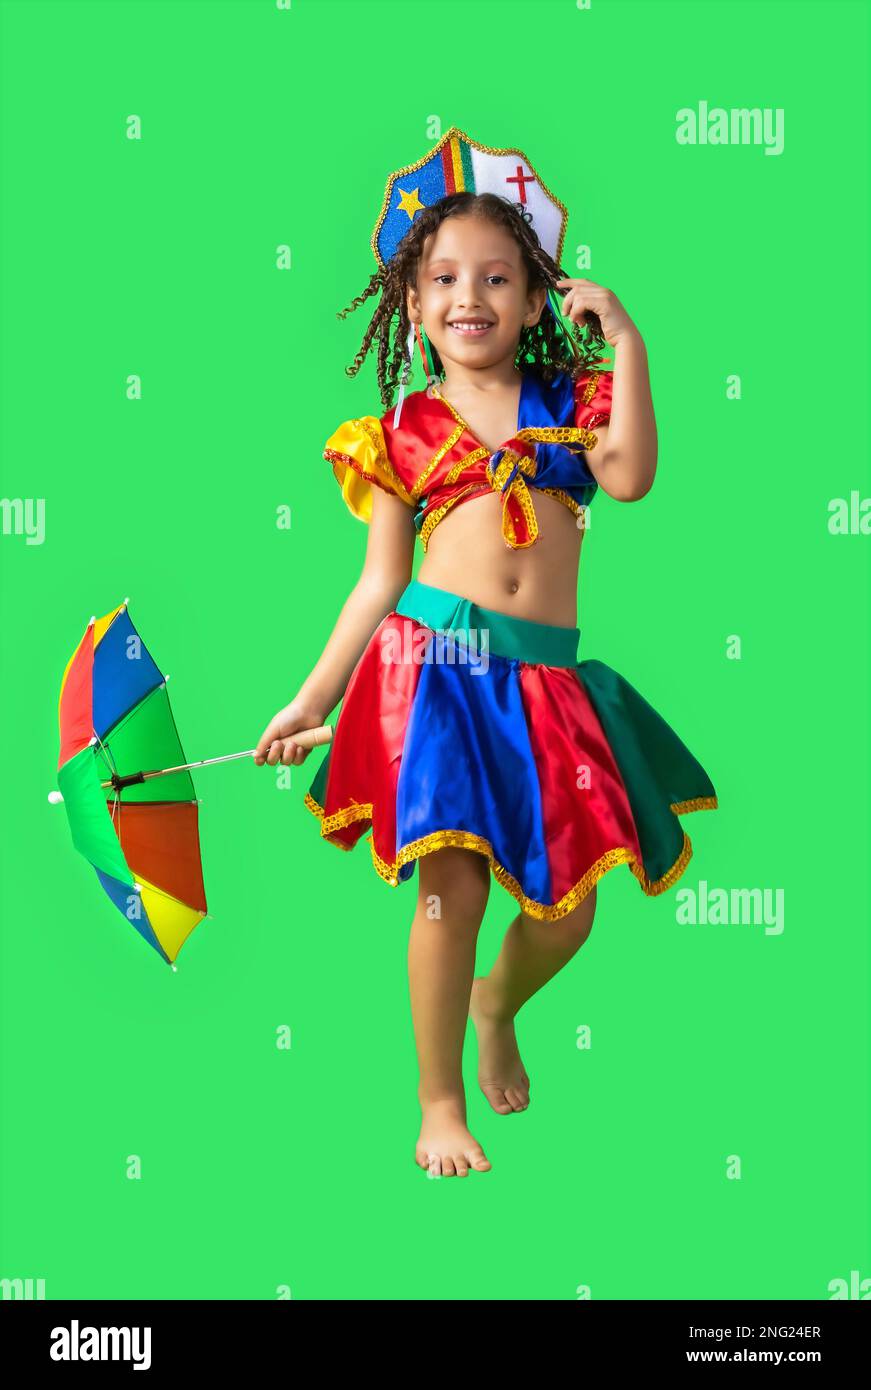 Fille brésilienne, vêtue d'une tenue de carnaval, dansant avec un parapluie frevo. Petite fille, brésilienne, avec des vêtements de frevo, costume de carnaval, frevo dansant Banque D'Images